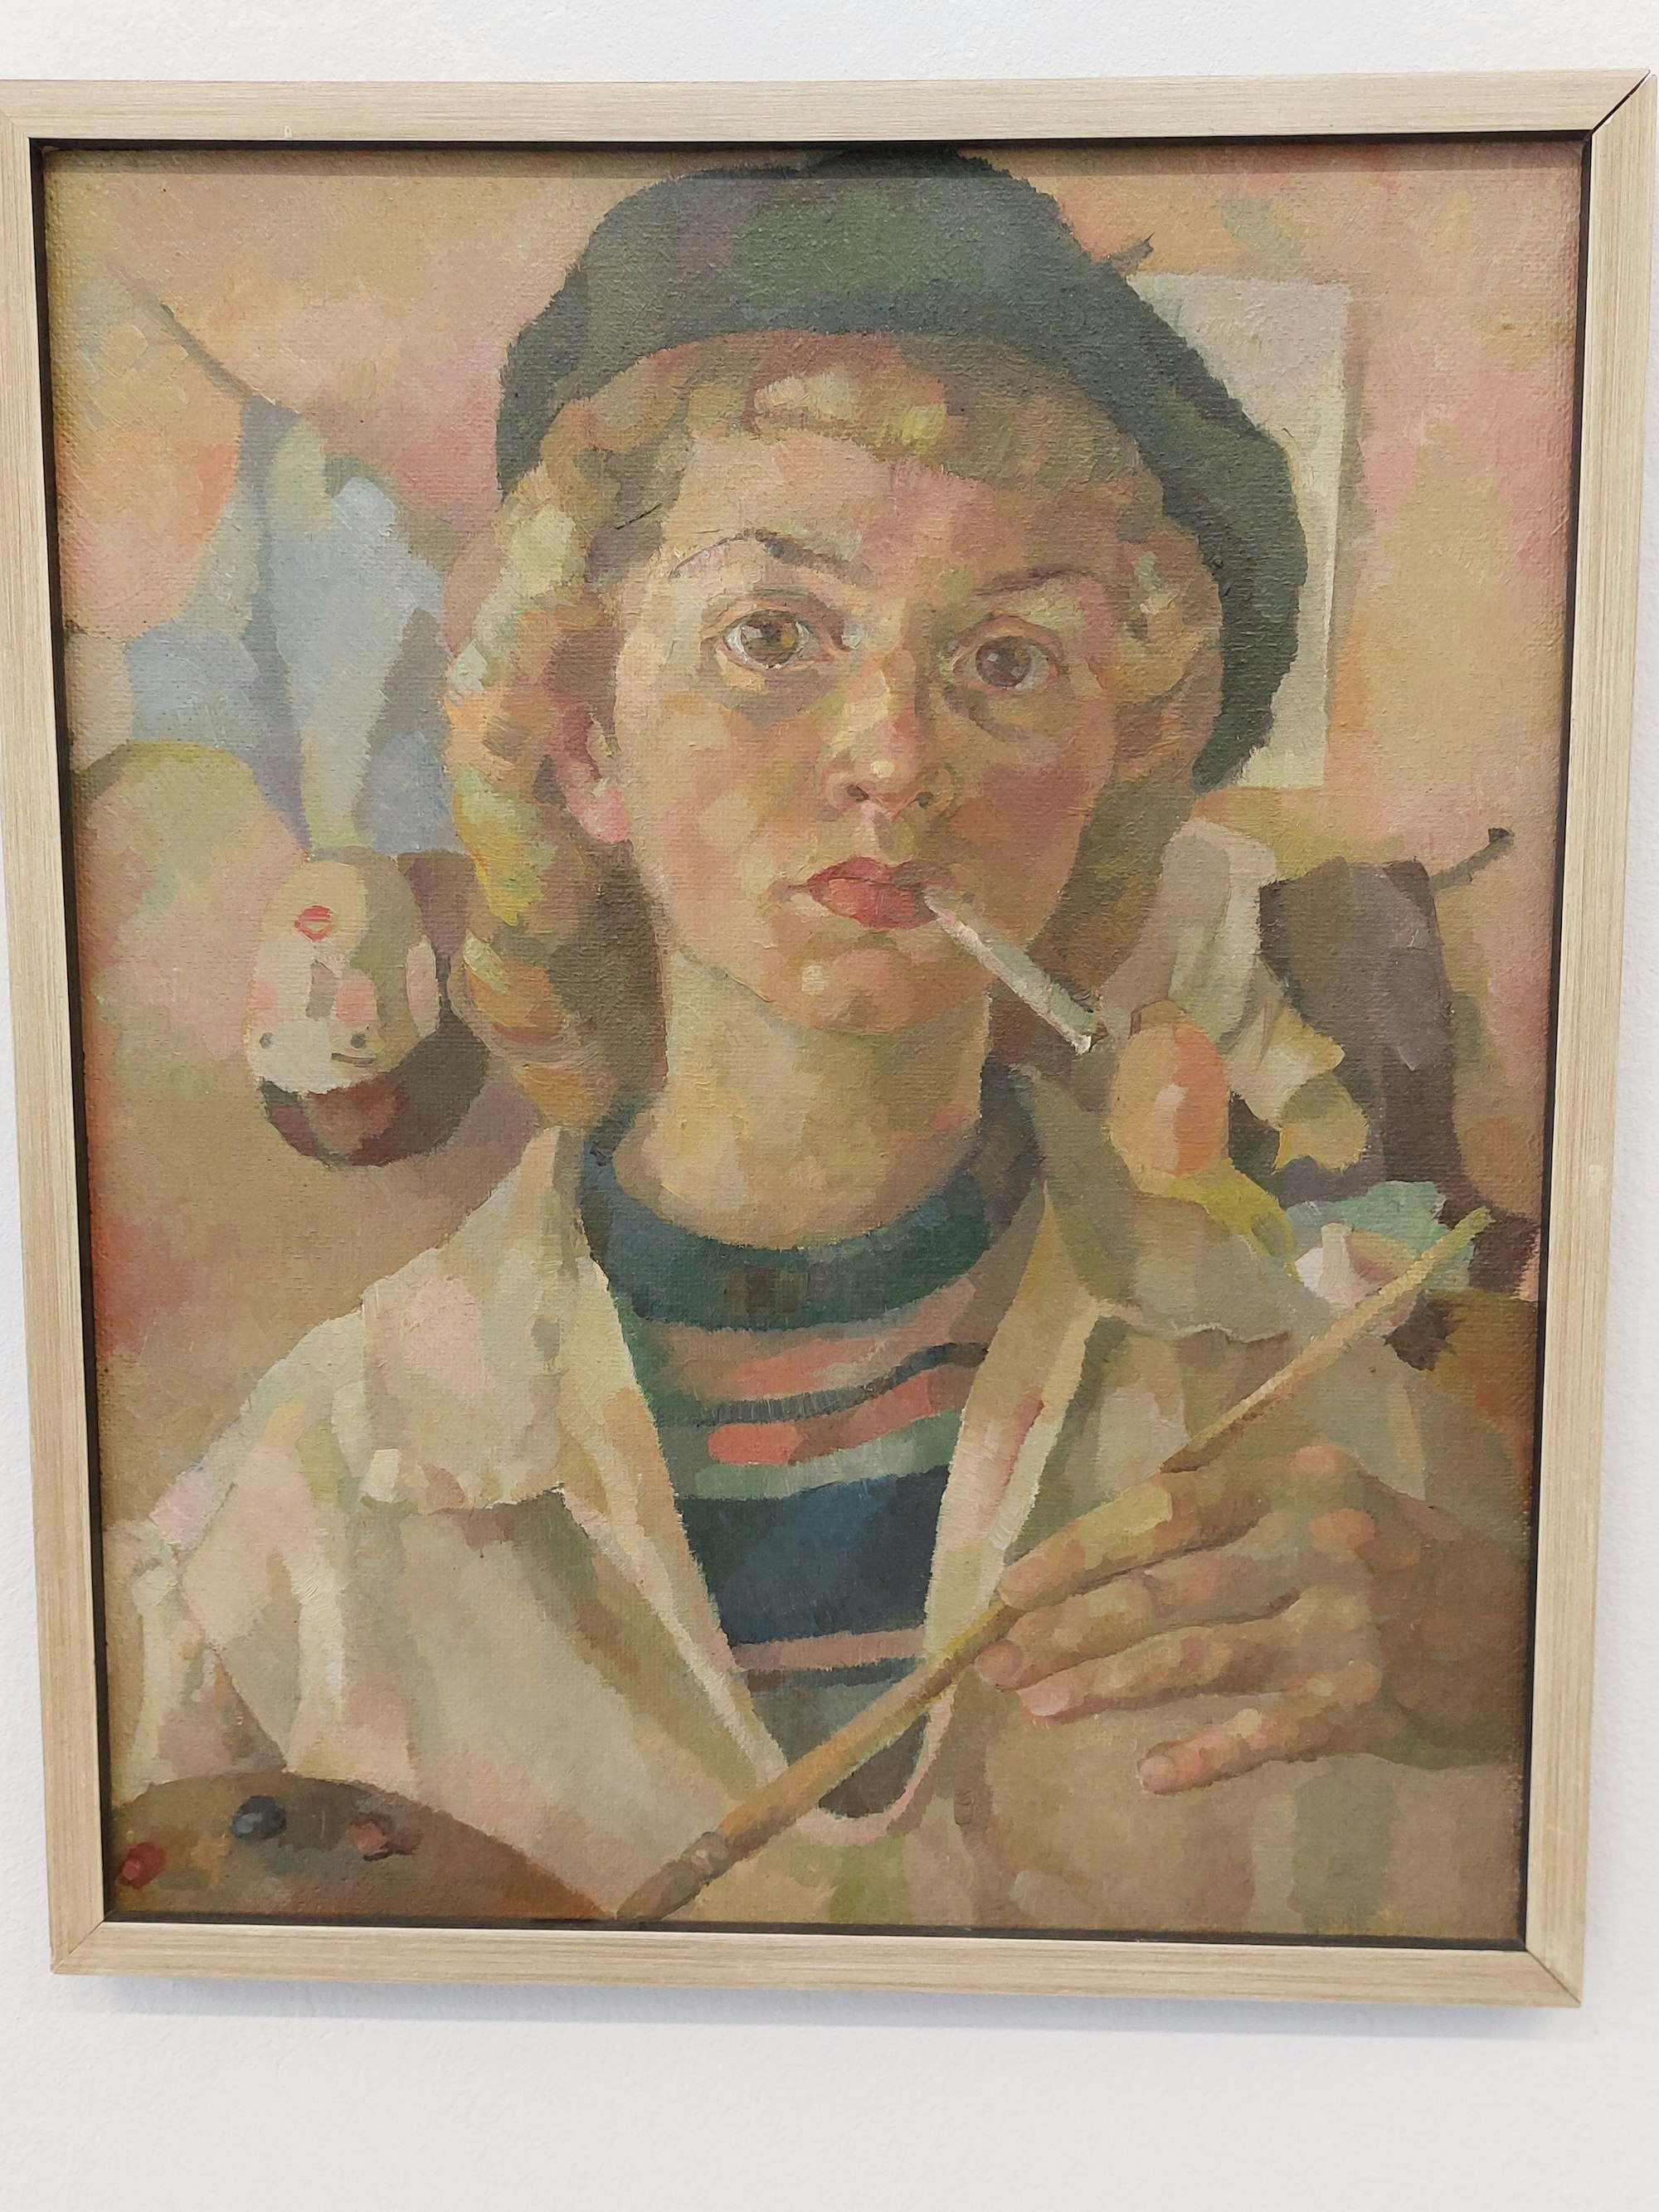 Das Porträt einer jungen Frau; sie zeigt sich mit Baskenmütze, Pinsel und Zigarette im Mundwinkel als Künstlerin.